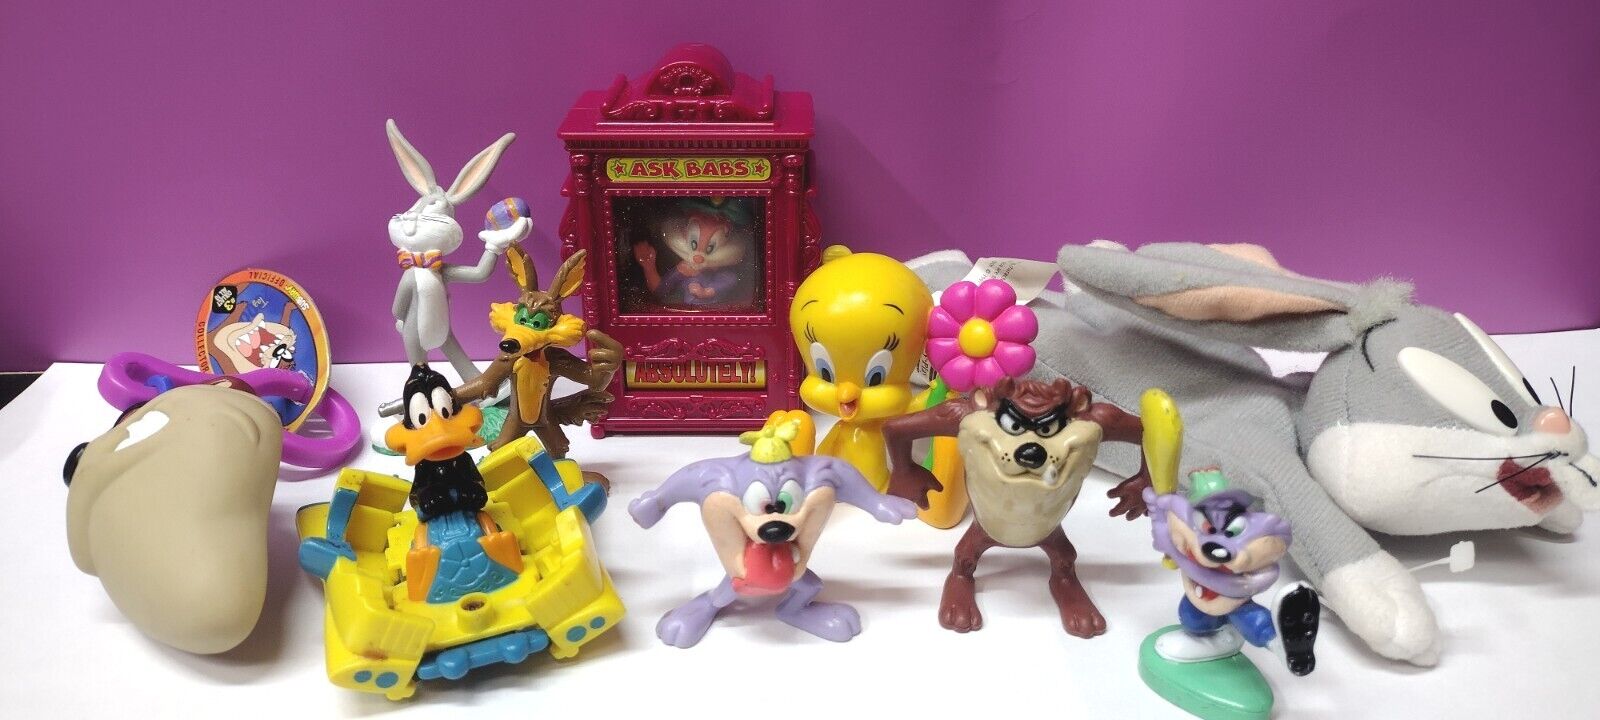 Vintage Looney Toons Lot - Wiley Coyote, Bugs, Taz, Figurines - Warner Brothers